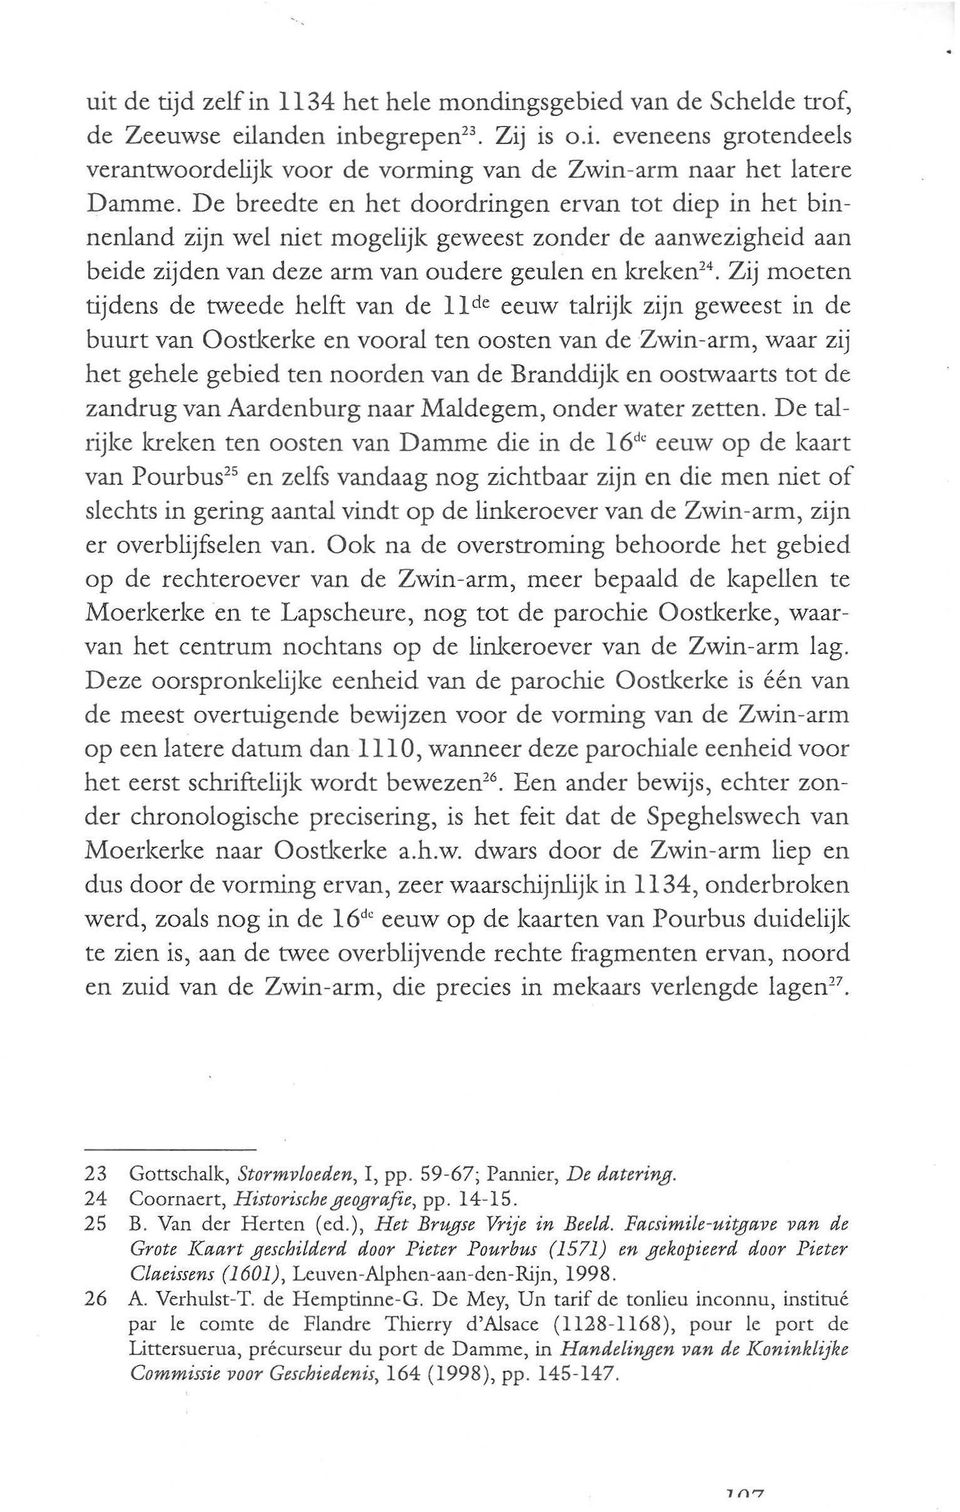 tweede helft van de 11 de eeuw talrijk zijn geweest in de buurt van Oostkerke en vooral ten oosten van de Zwin-arm, waar zij het gehele gebied ten noorden van de Branddijk en oostwaarts tot de